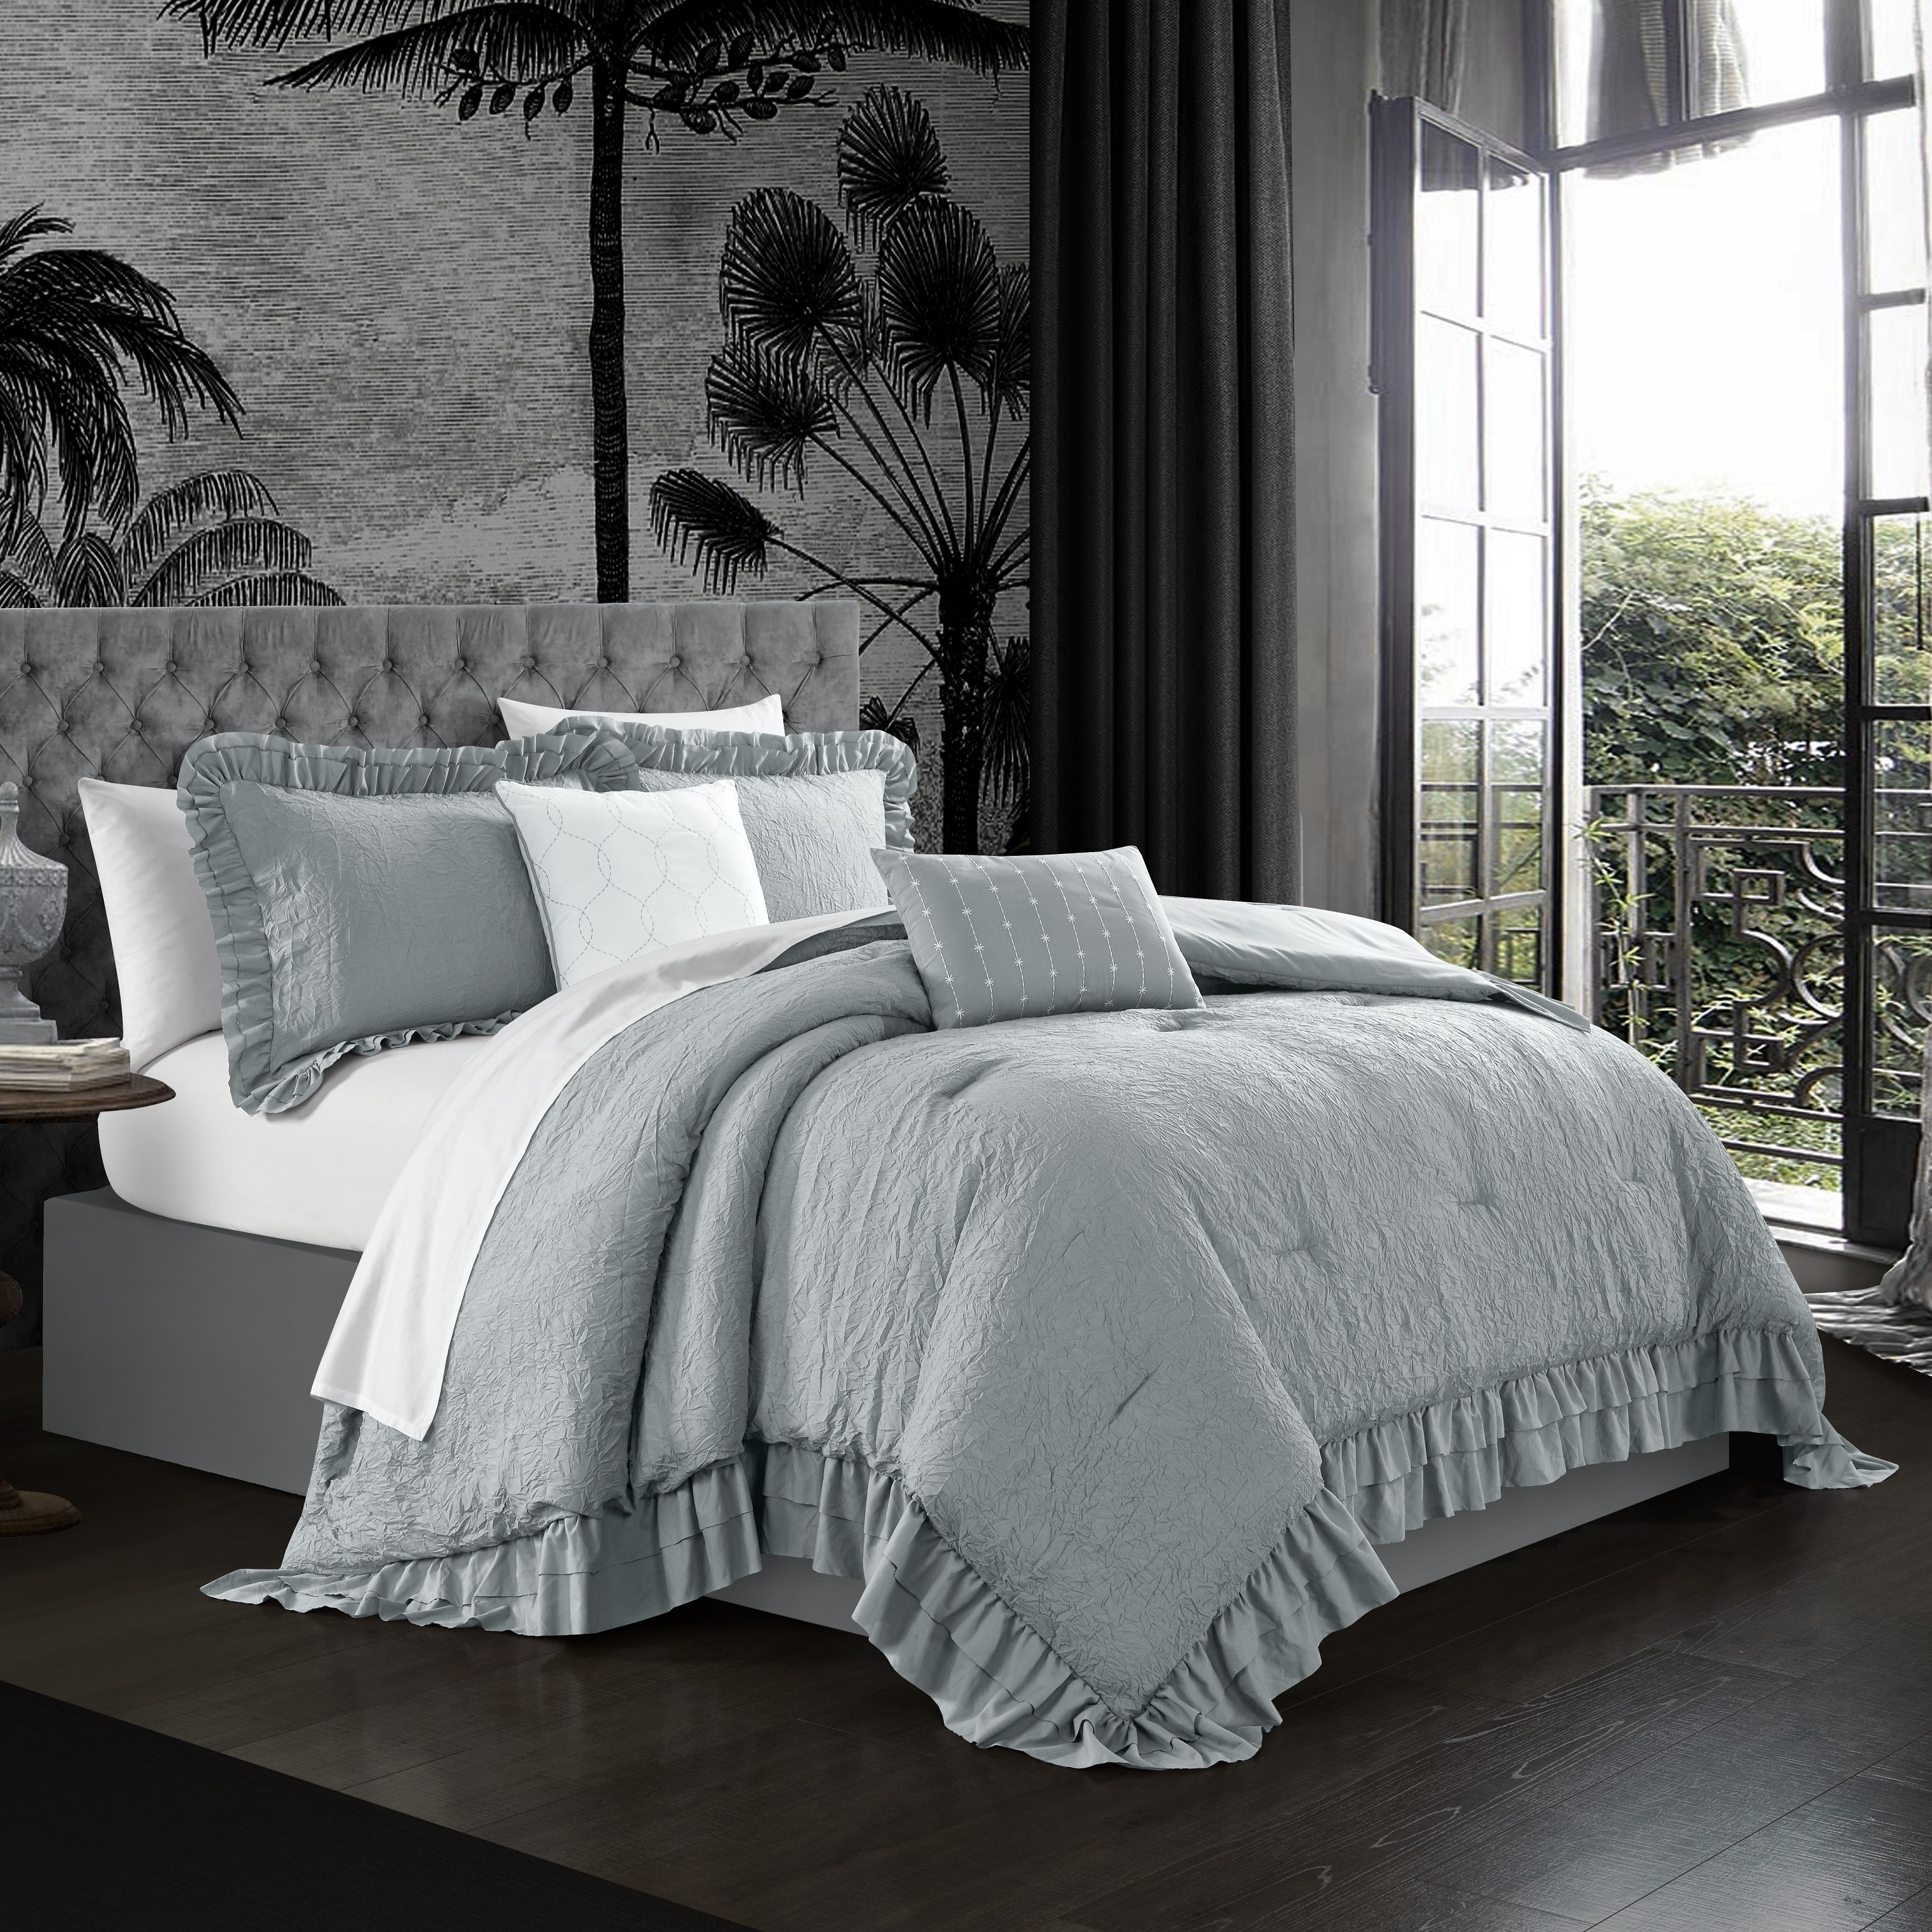 5 Piece Kensley Comforter Set Washed Crinkle Ruffled Flange Border Design Bedding - Lavender, Twin